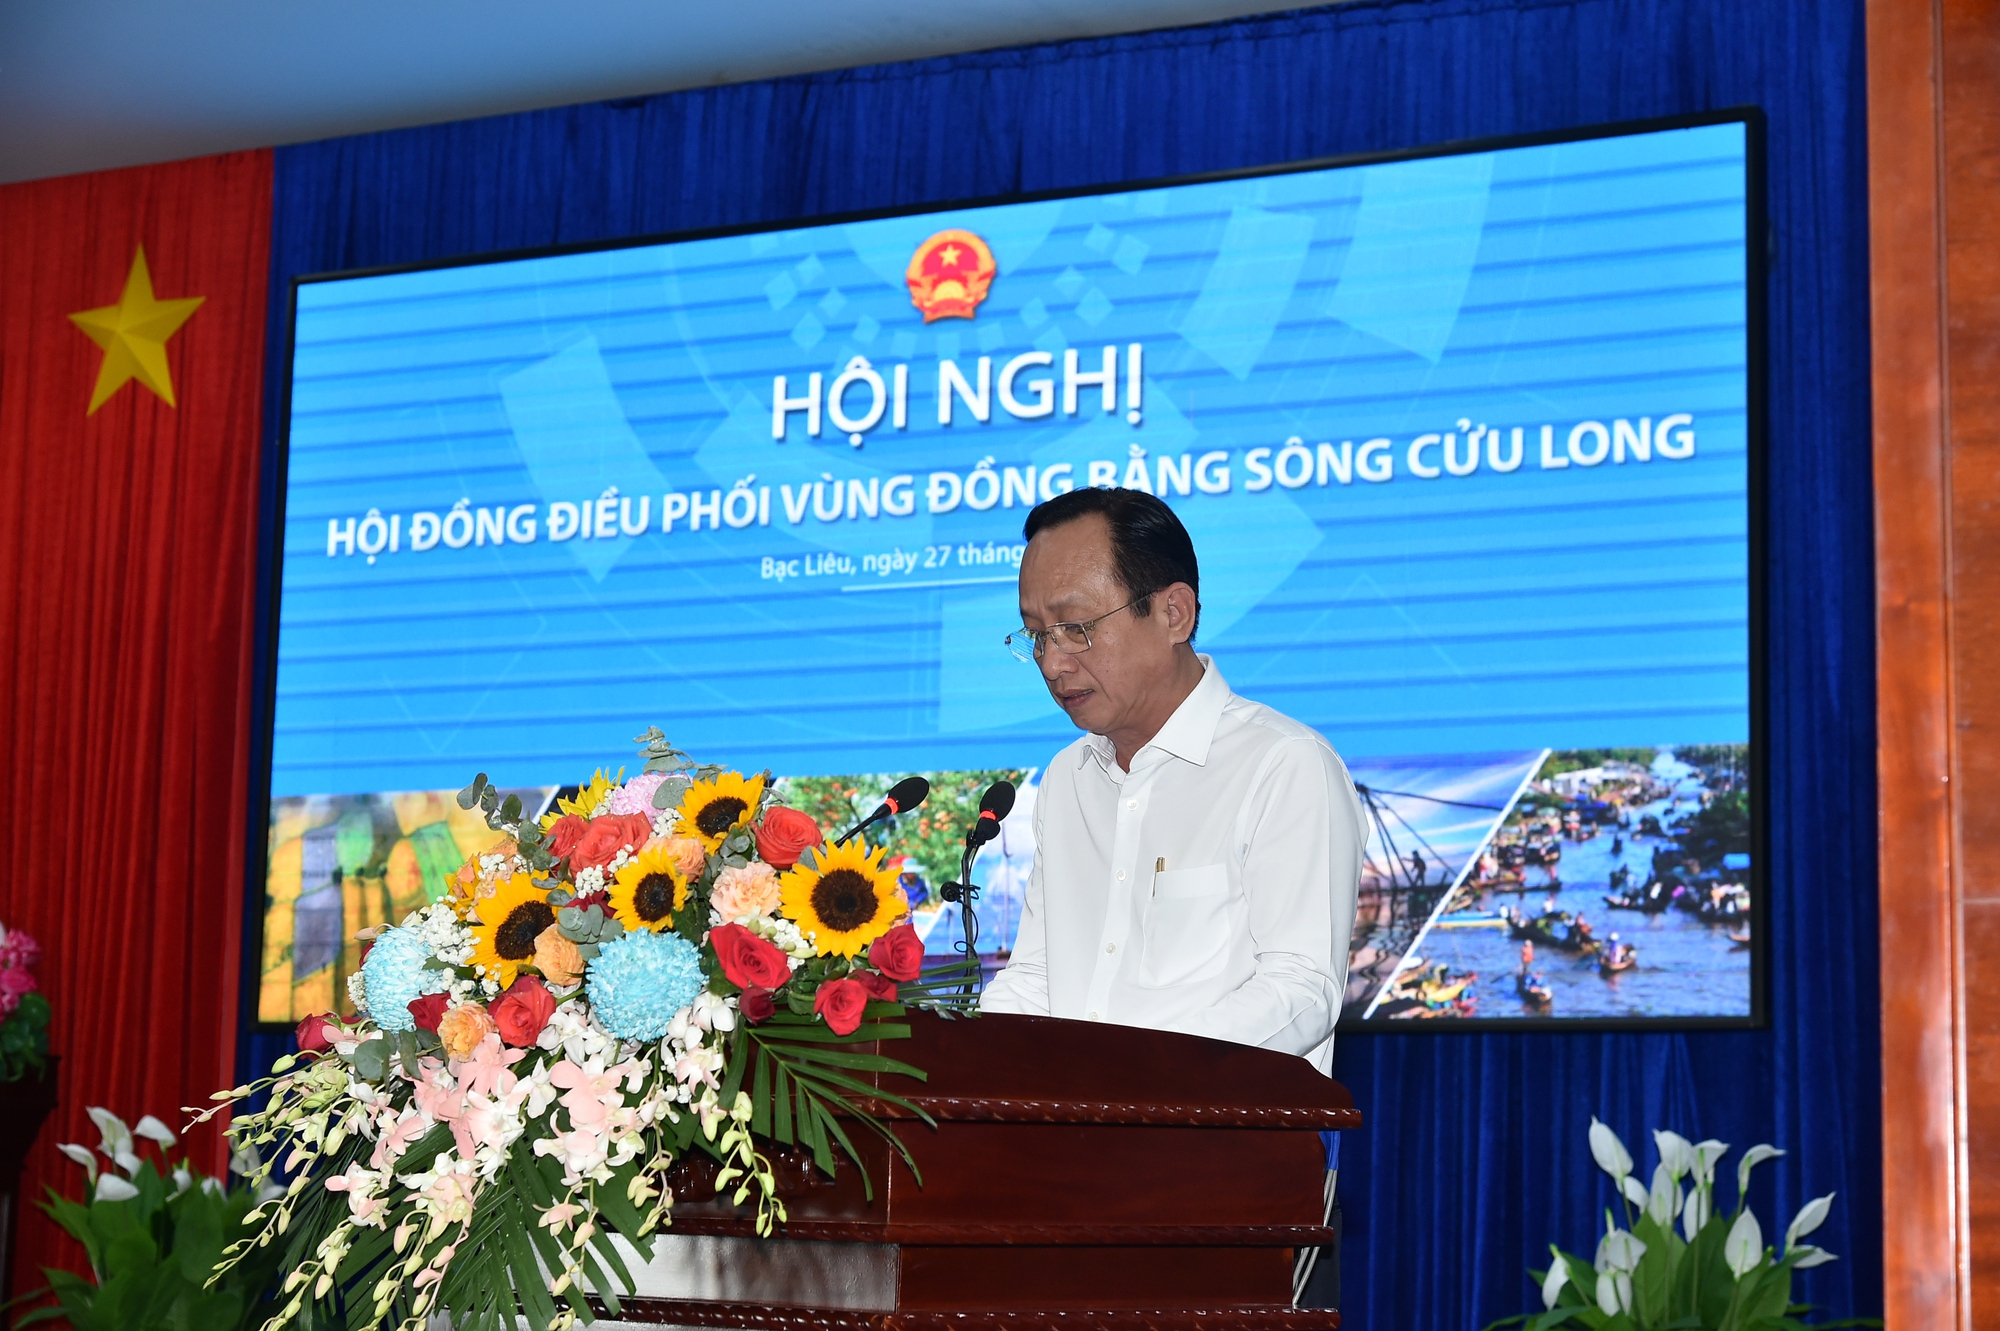 Phó Thủ tướng Lê Minh Khái chủ trì Hội nghị Hội đồng điều phối vùng đồng bằng sông Cửu Long - Ảnh 4.